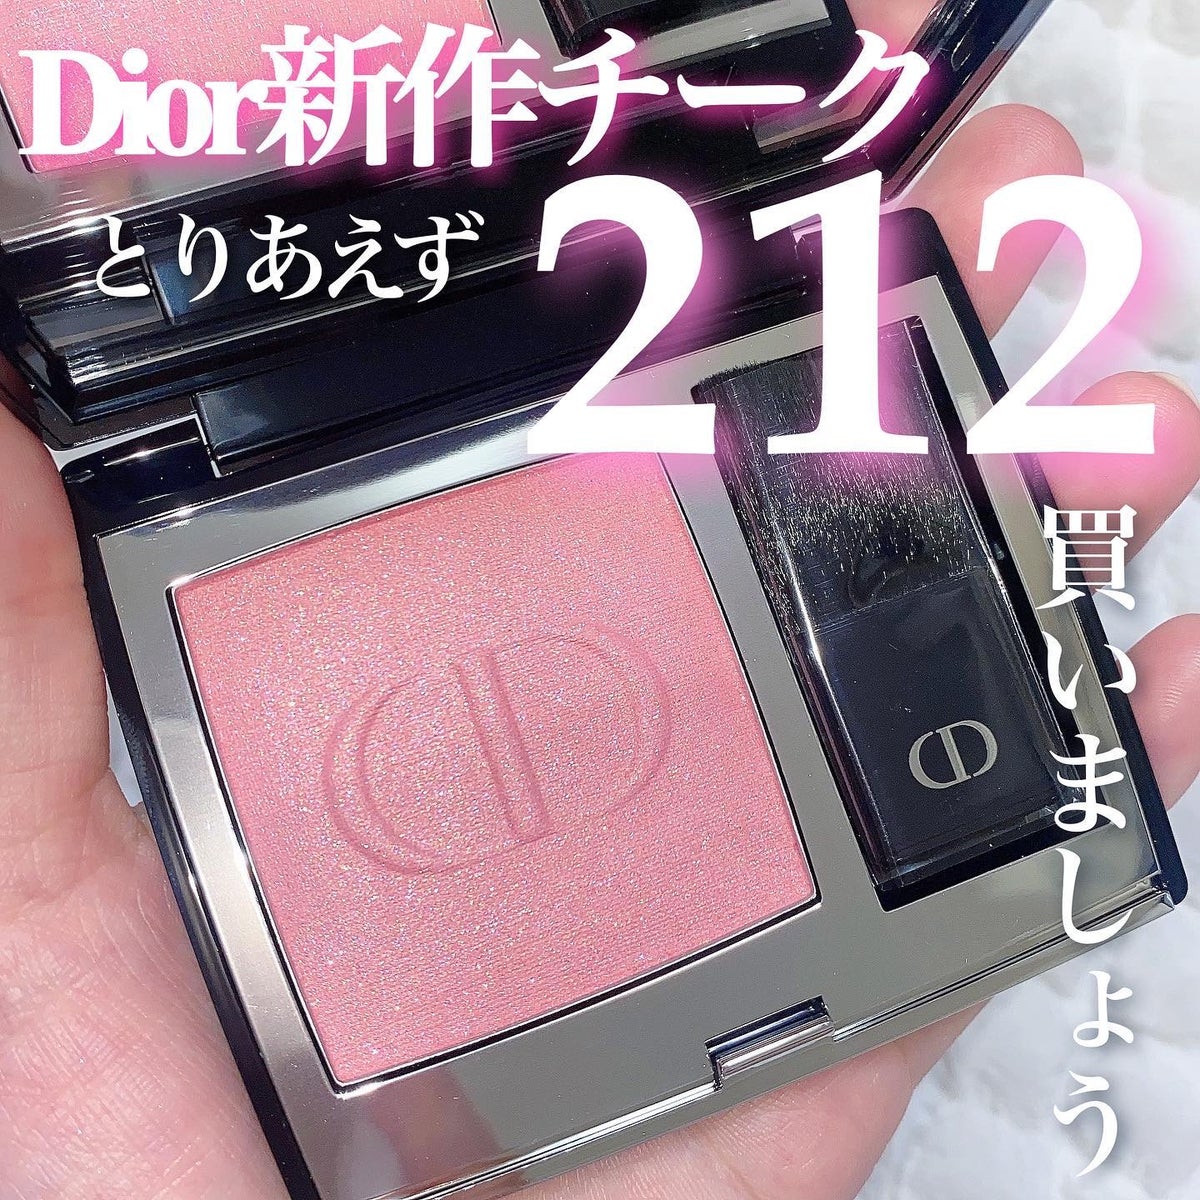 【新品未使用】Dior ルージュブラッシュ  212  チーク